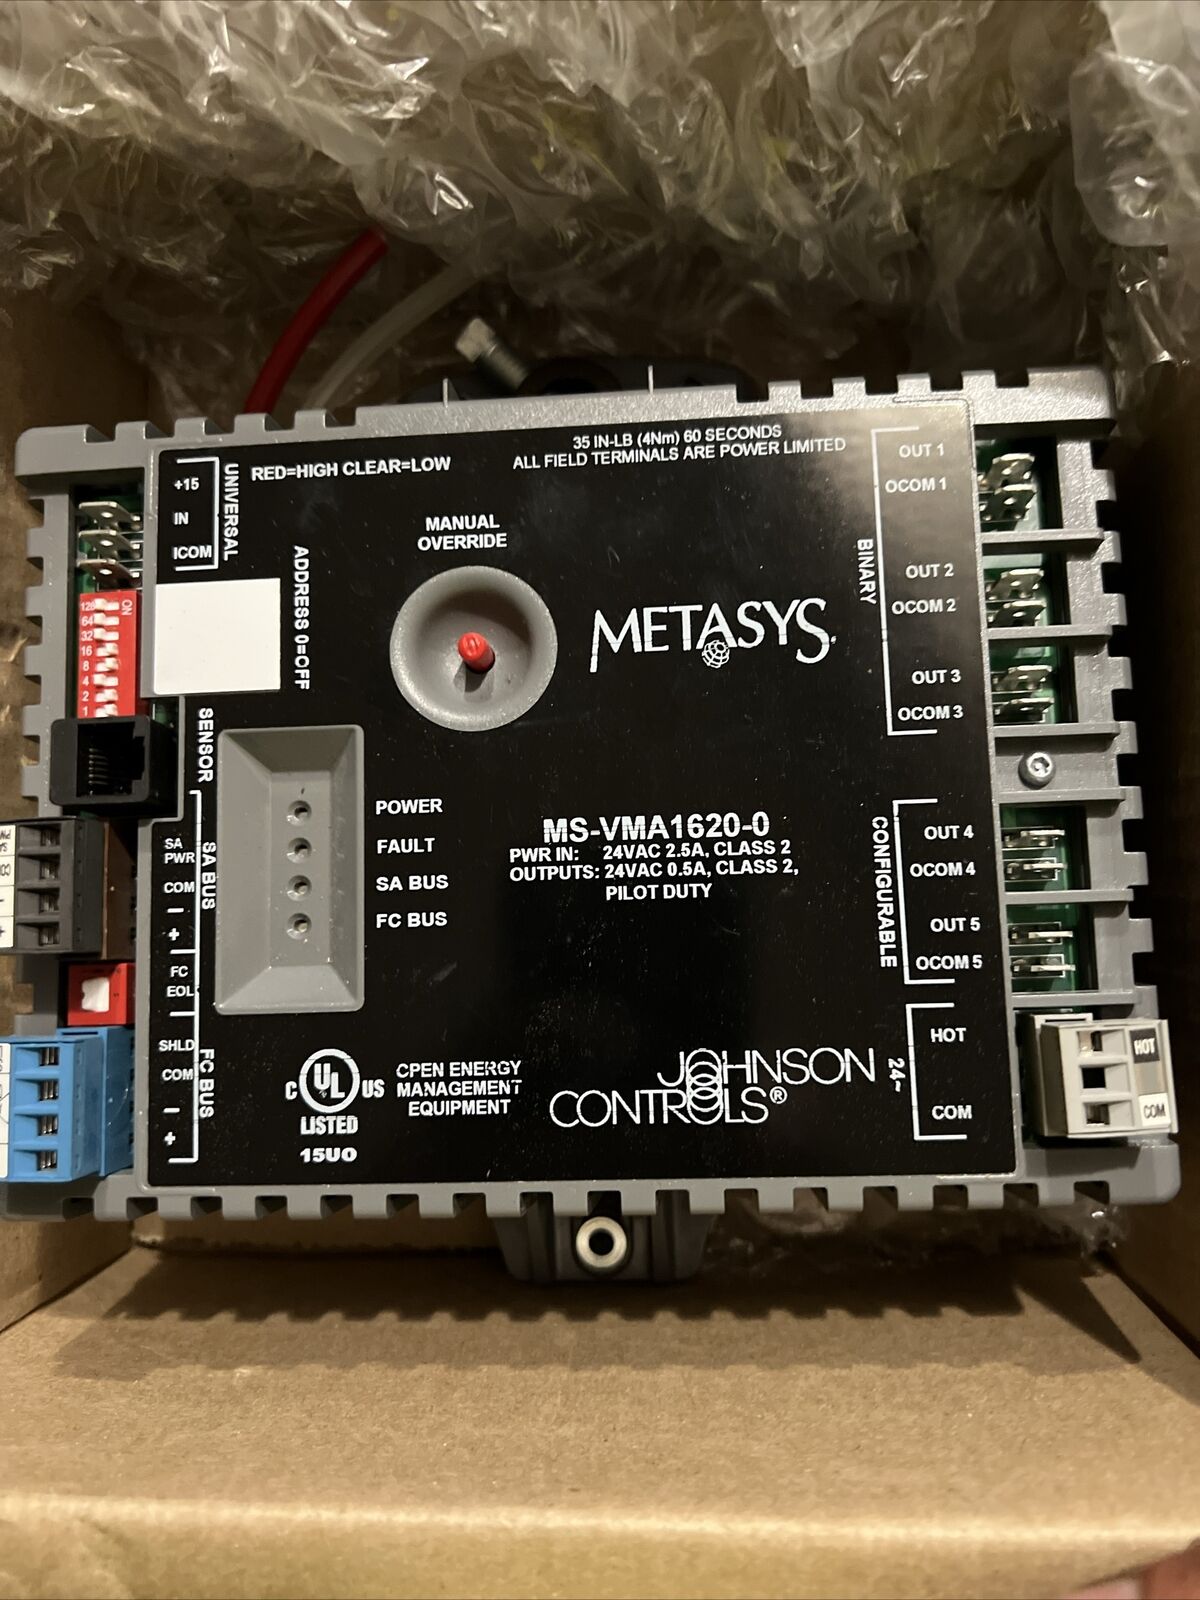 MS-VMA1620-0 JOHNSON CONTROLS METASYS  Control W Manual Override  NEW Open BOX